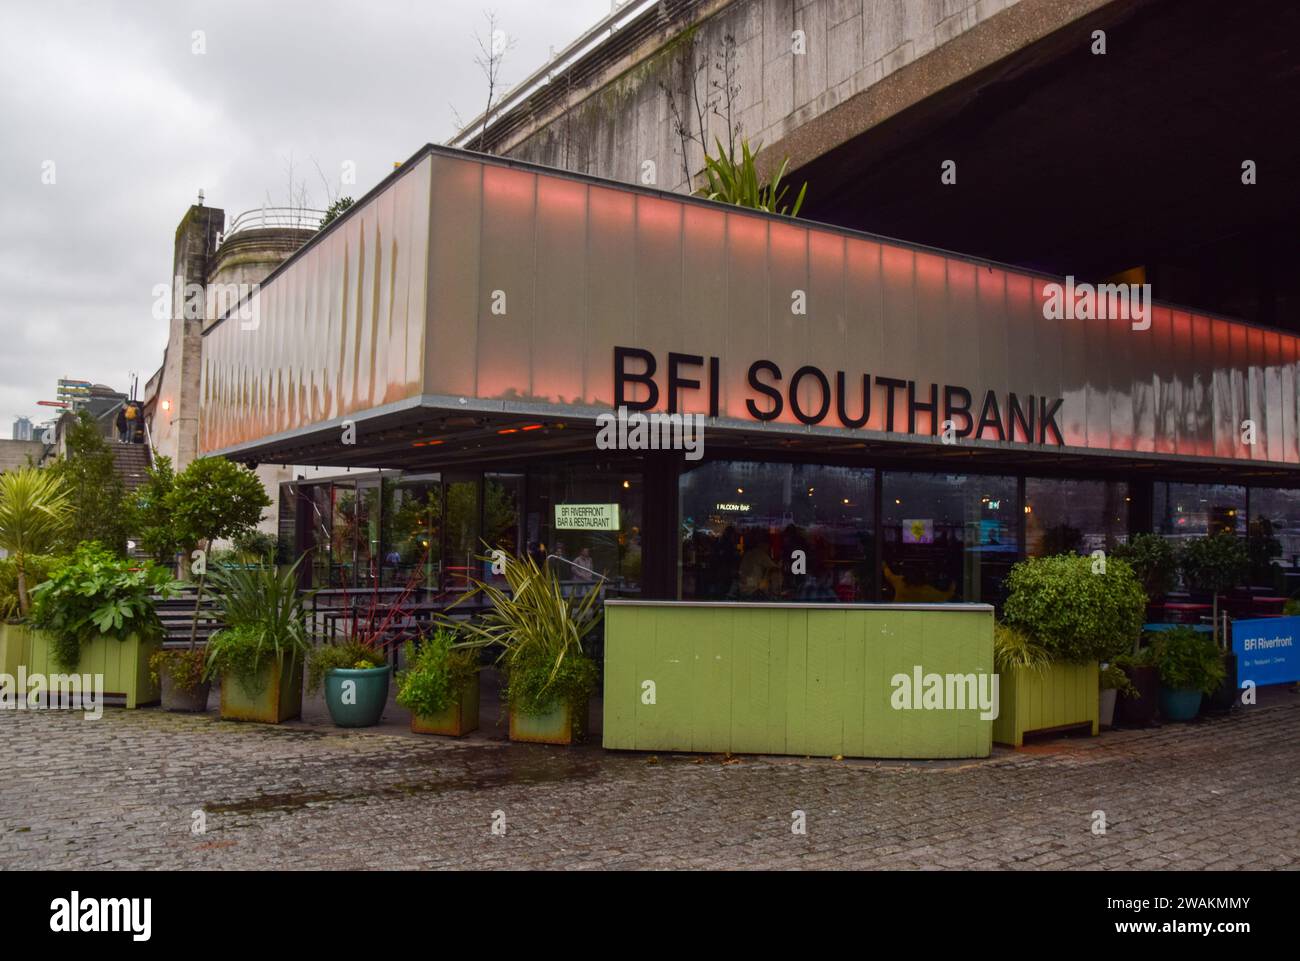 London, UK 5th January 2024. Exterior view of BFI Southbank cinema. Credit: Vuk Valcic / Alamy Stock Photo